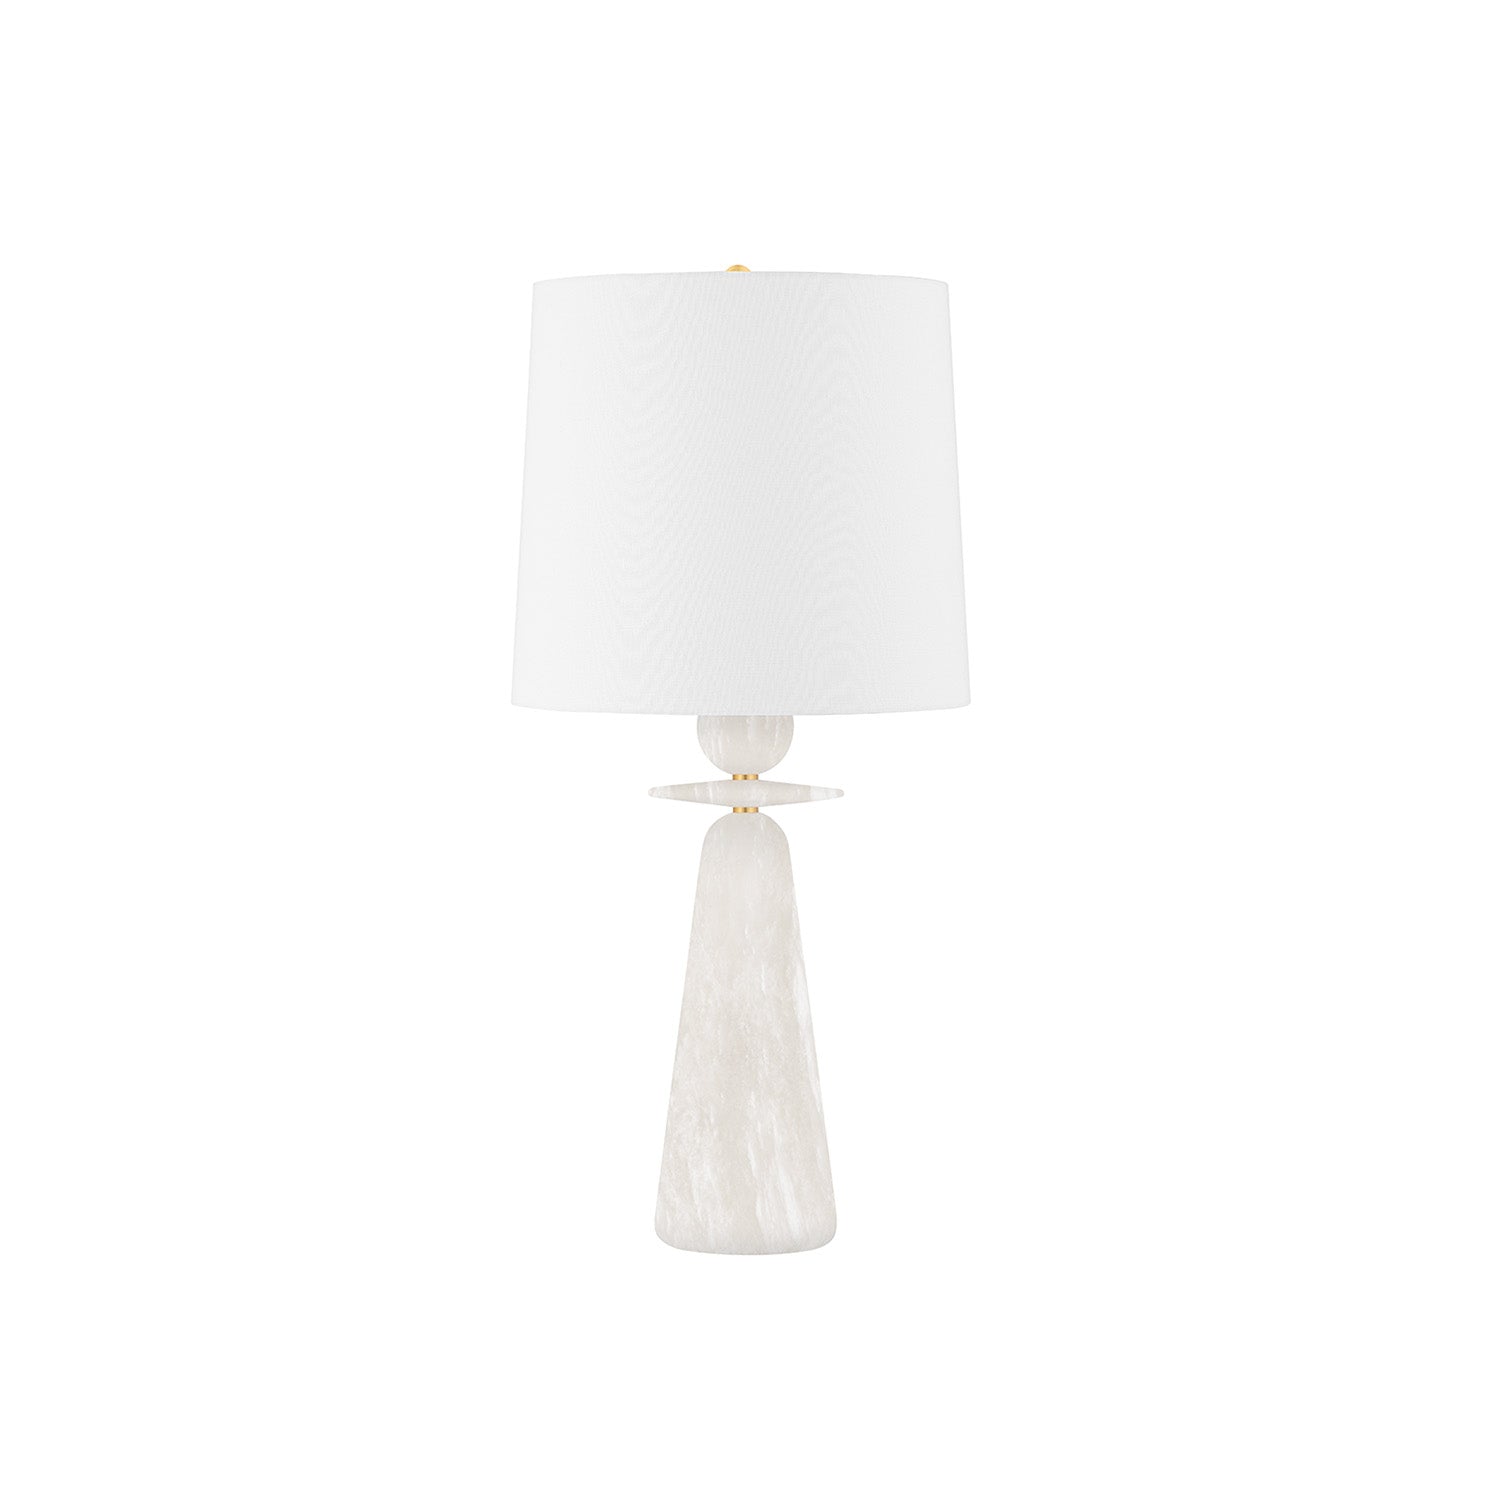 MONTGOMERY - Lampe de chevet en marbre blanc haussmannien